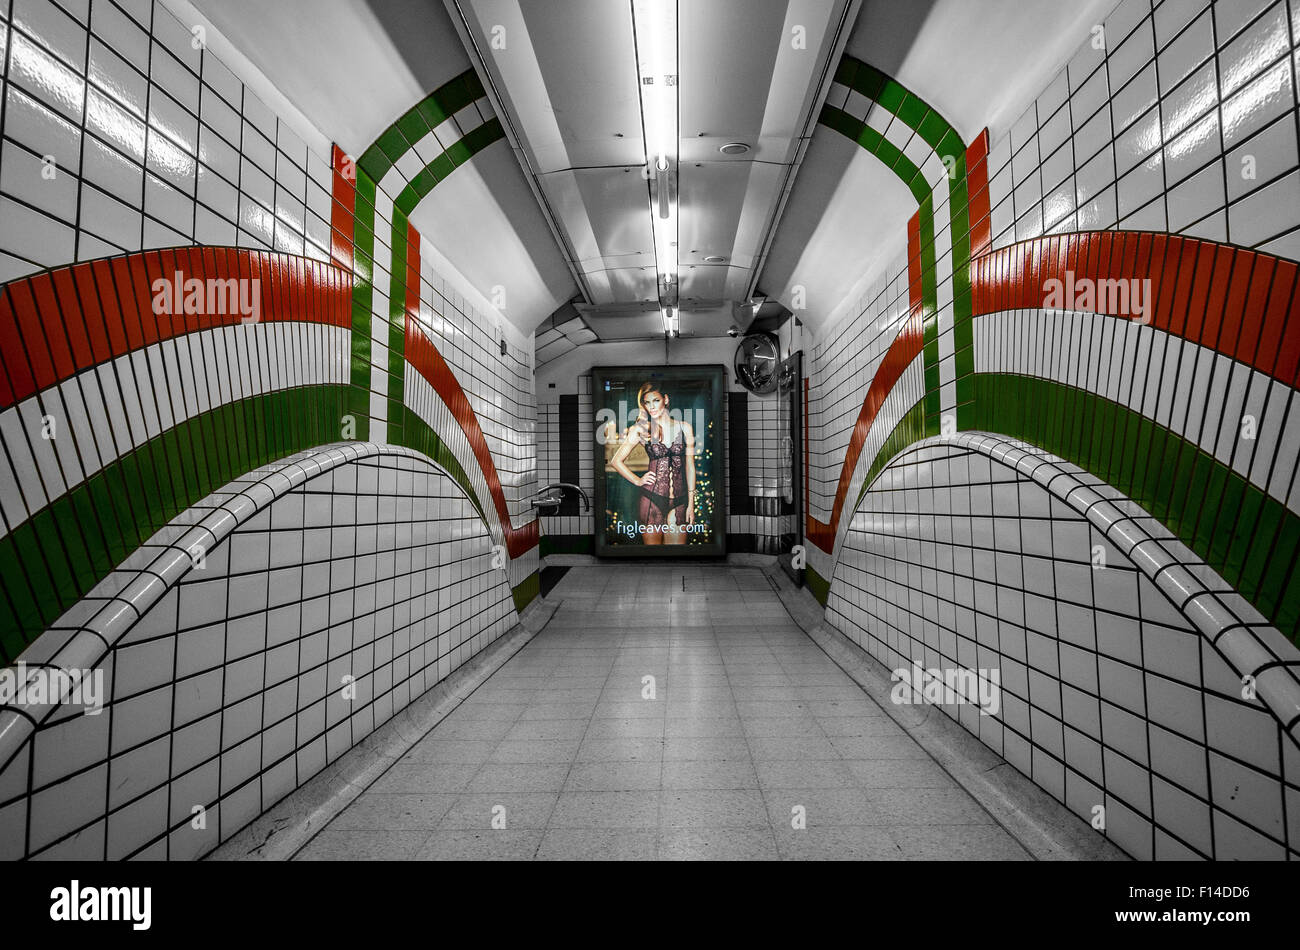 El metro de Londres con resaltado de color selectiva algunos detalles. Foto de stock